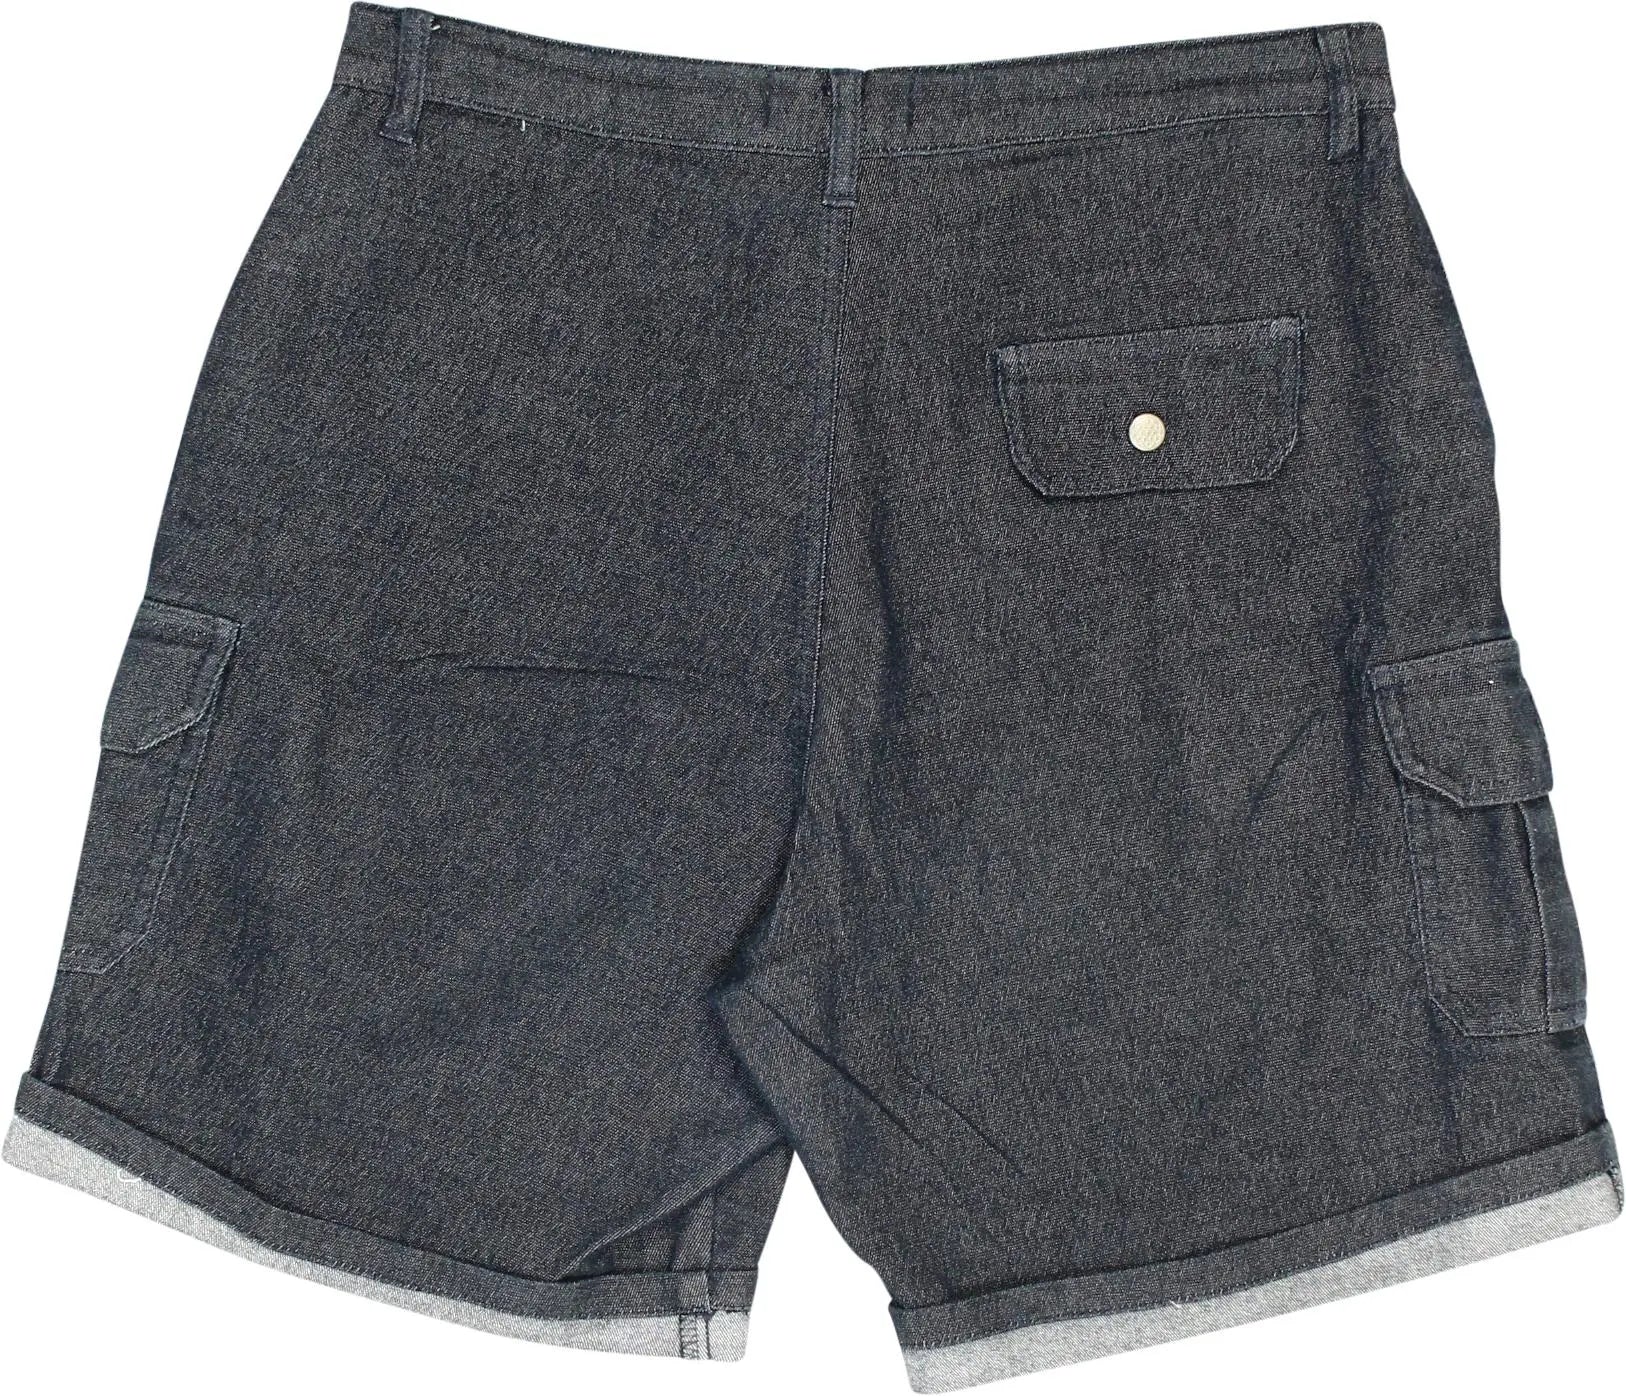 V&D - Denim Shorts- ThriftTale.com - Vintage and second handclothing